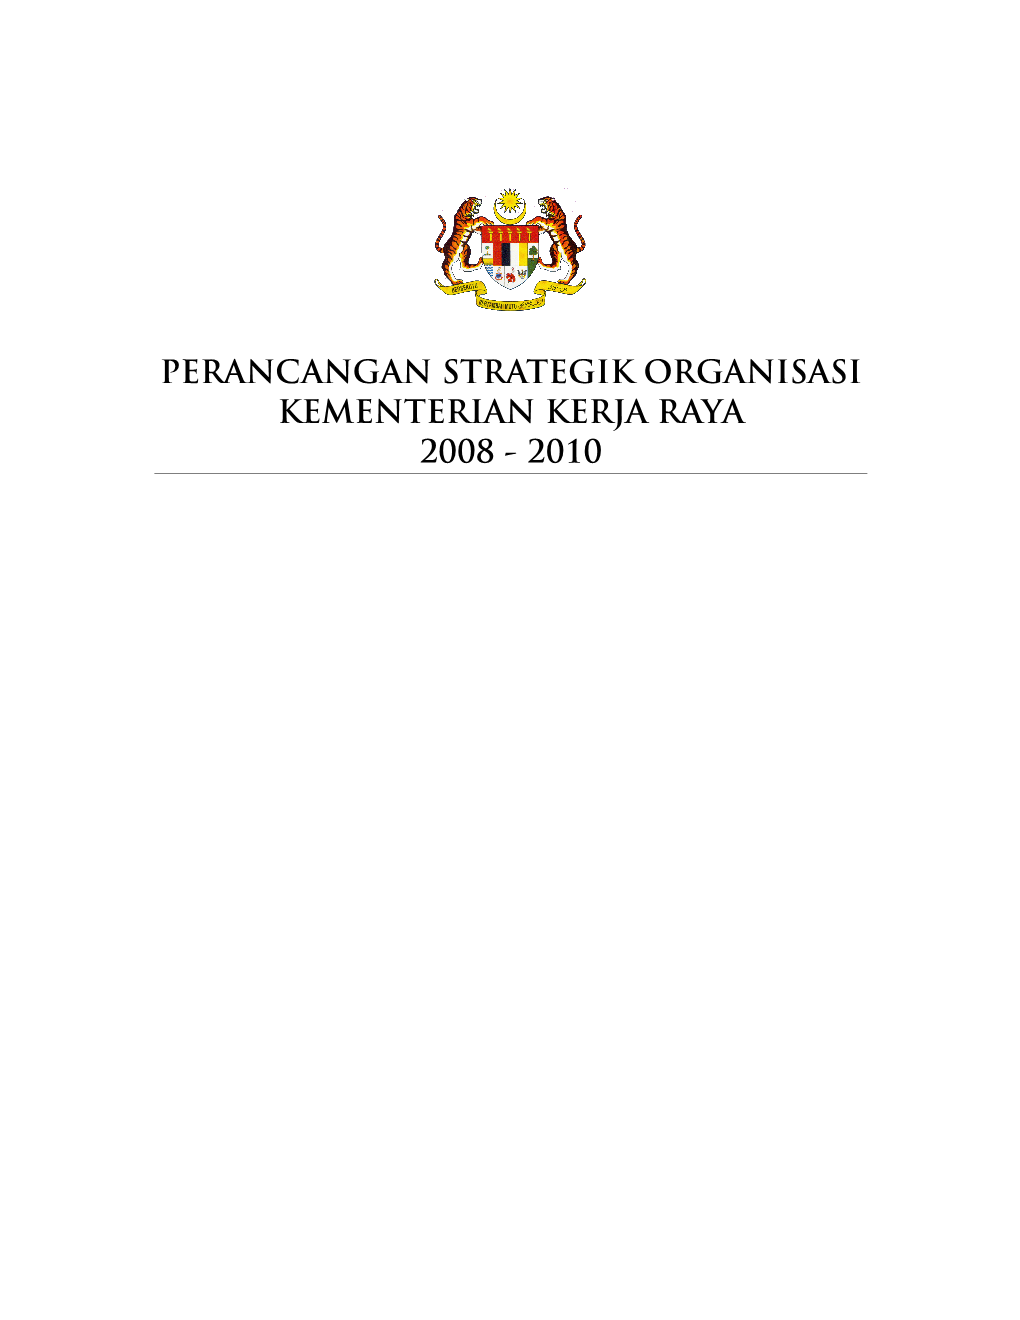 Perancangan Strategik Organisasi Kementerian Kerja Raya 2008 - 2010